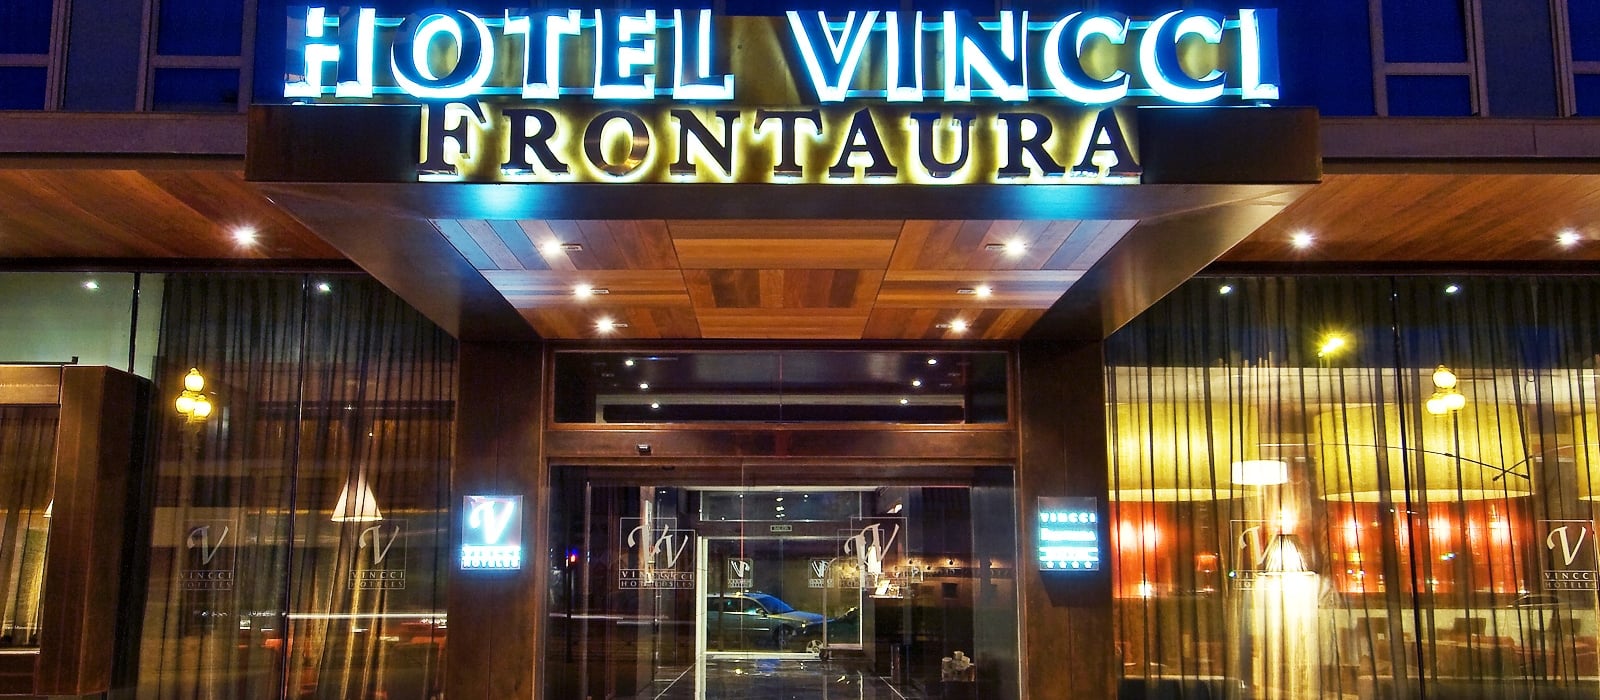 Seitenansicht-Hotel Valladolid Frontaura - Vincci Hoteles